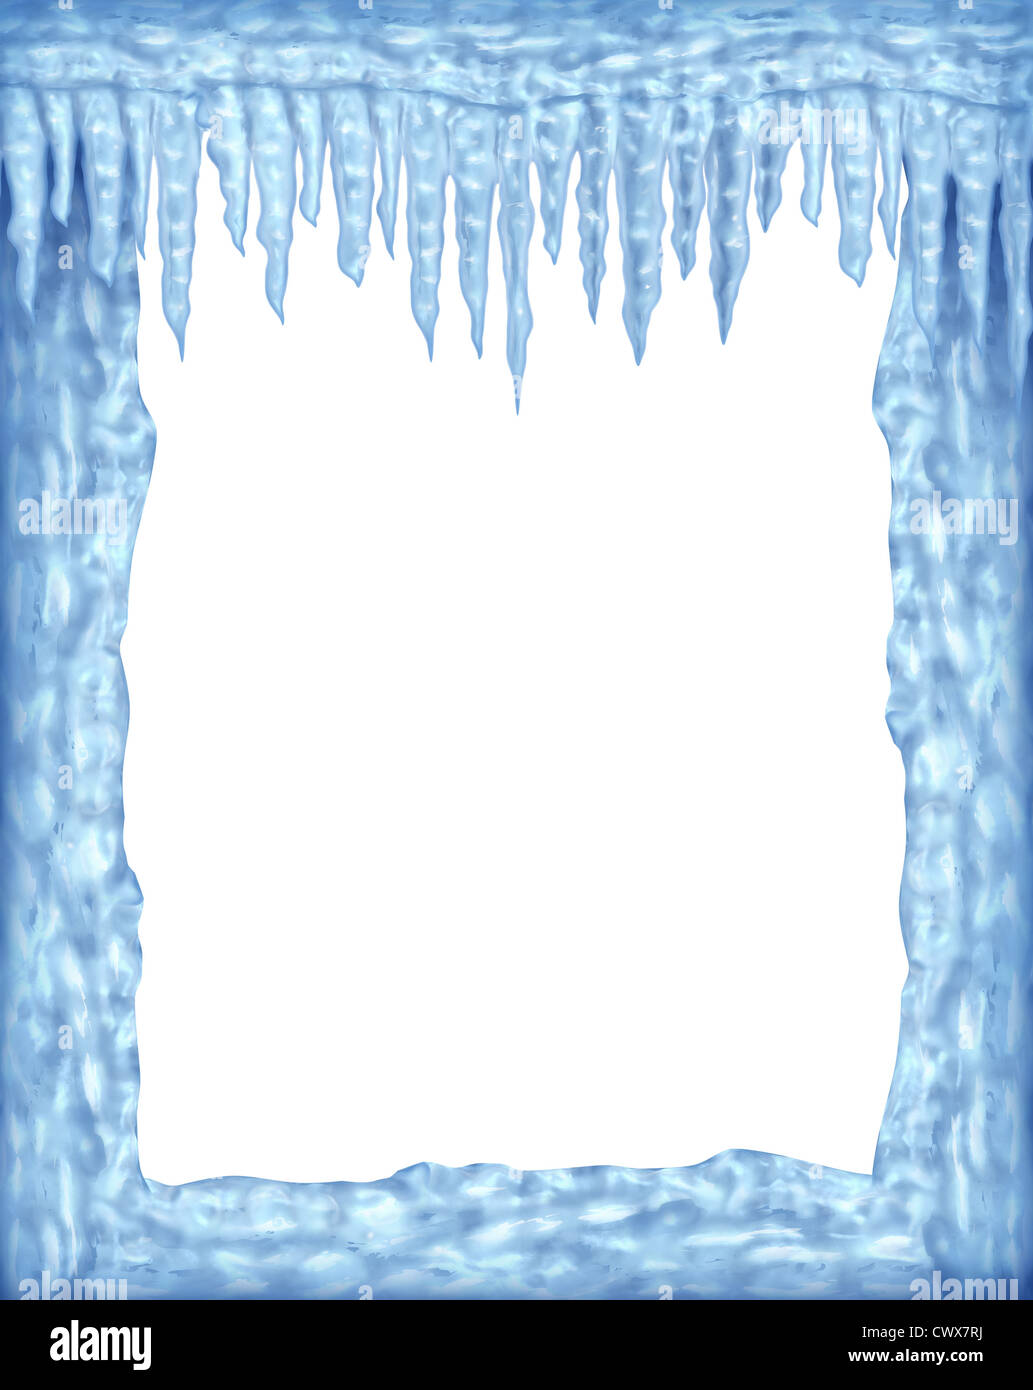 Eis und Eiszapfen Rahmen Winter-Design-Element auf einem leeren weißen Hintergrund Vertretung der arktischen Kälte und niedrigen Temperaturen wiederum glänzend transparent Eiskristalle hängen. Stockfoto